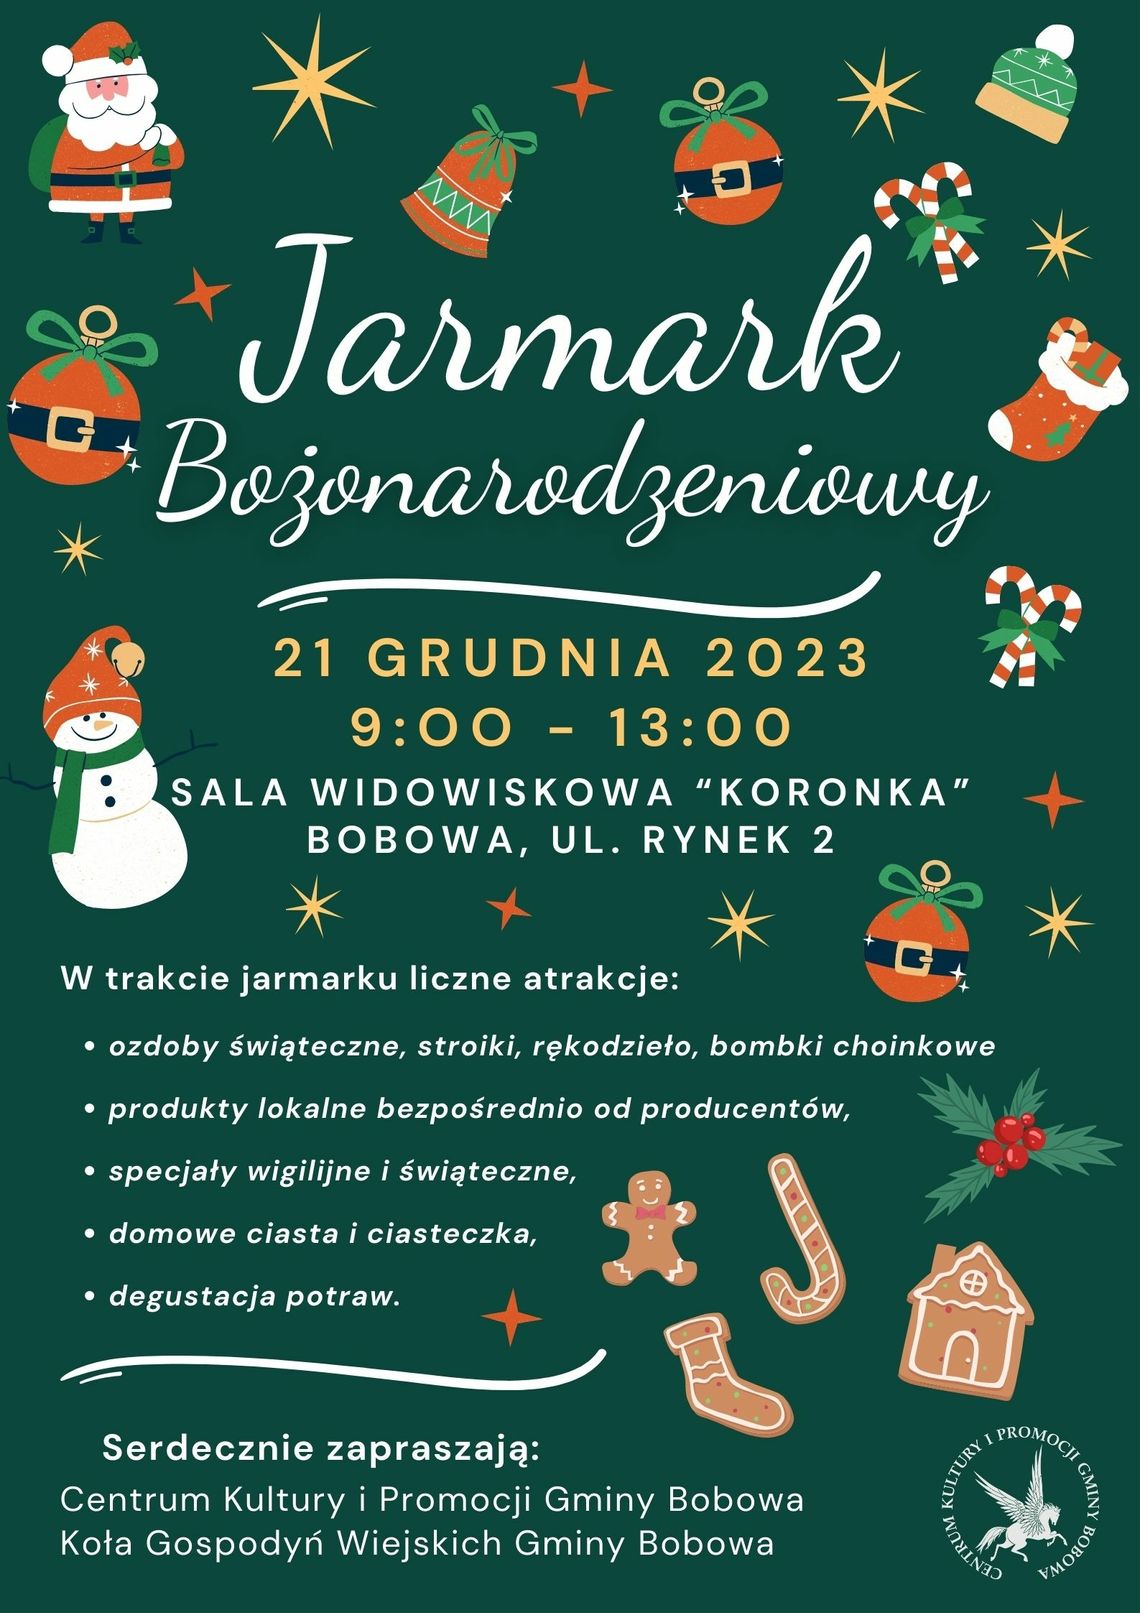 Jarmark Bożonarodzeniowy w Bobowej | halogorlice.info